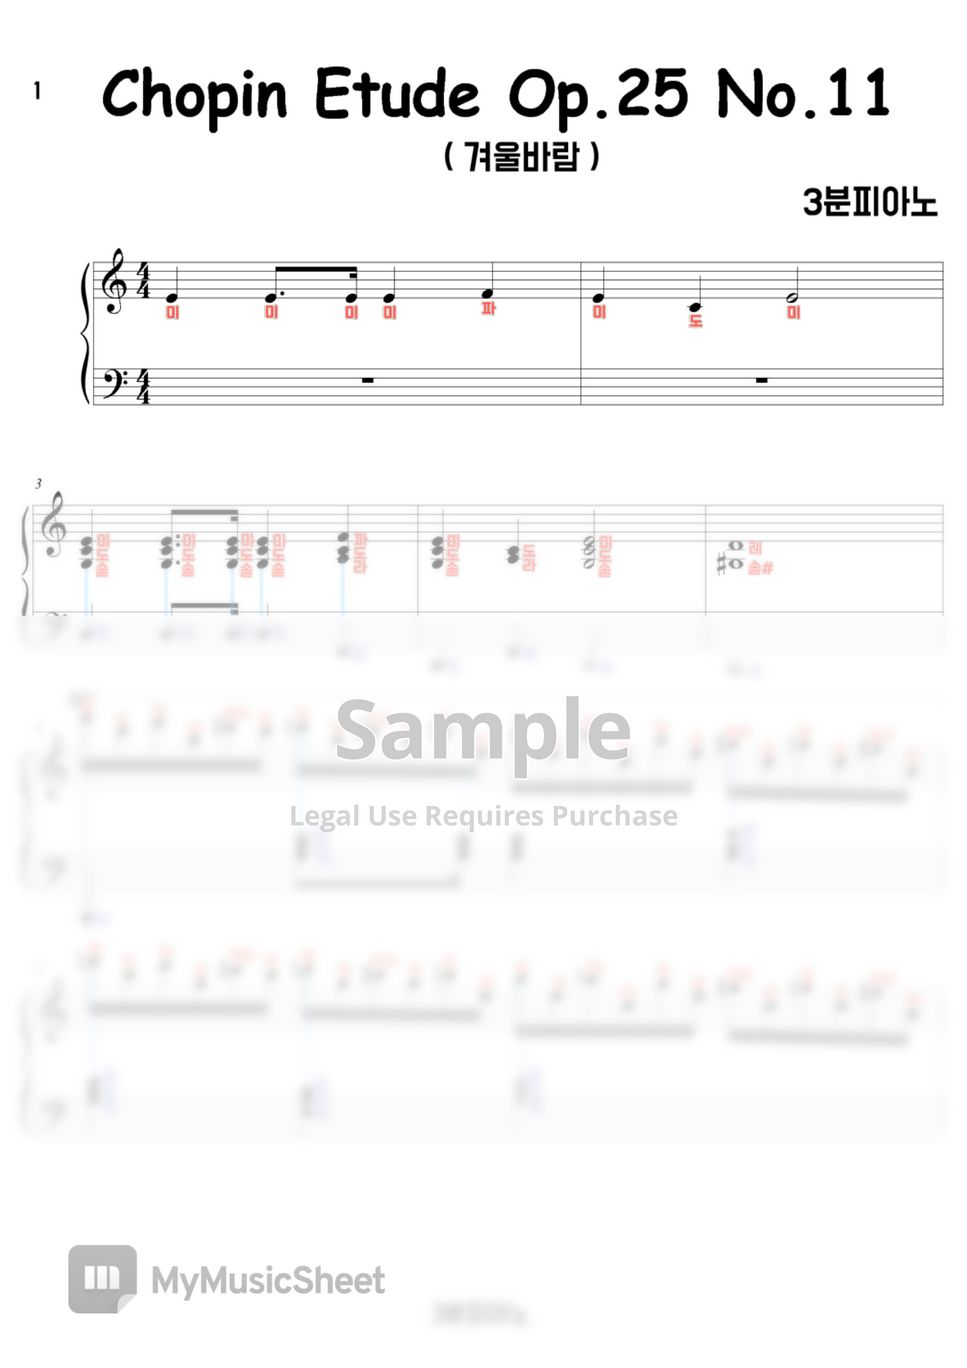 Chopin - Etude Op.25 No.11(겨울바람) (계이름악보 포함) by 3분피아노